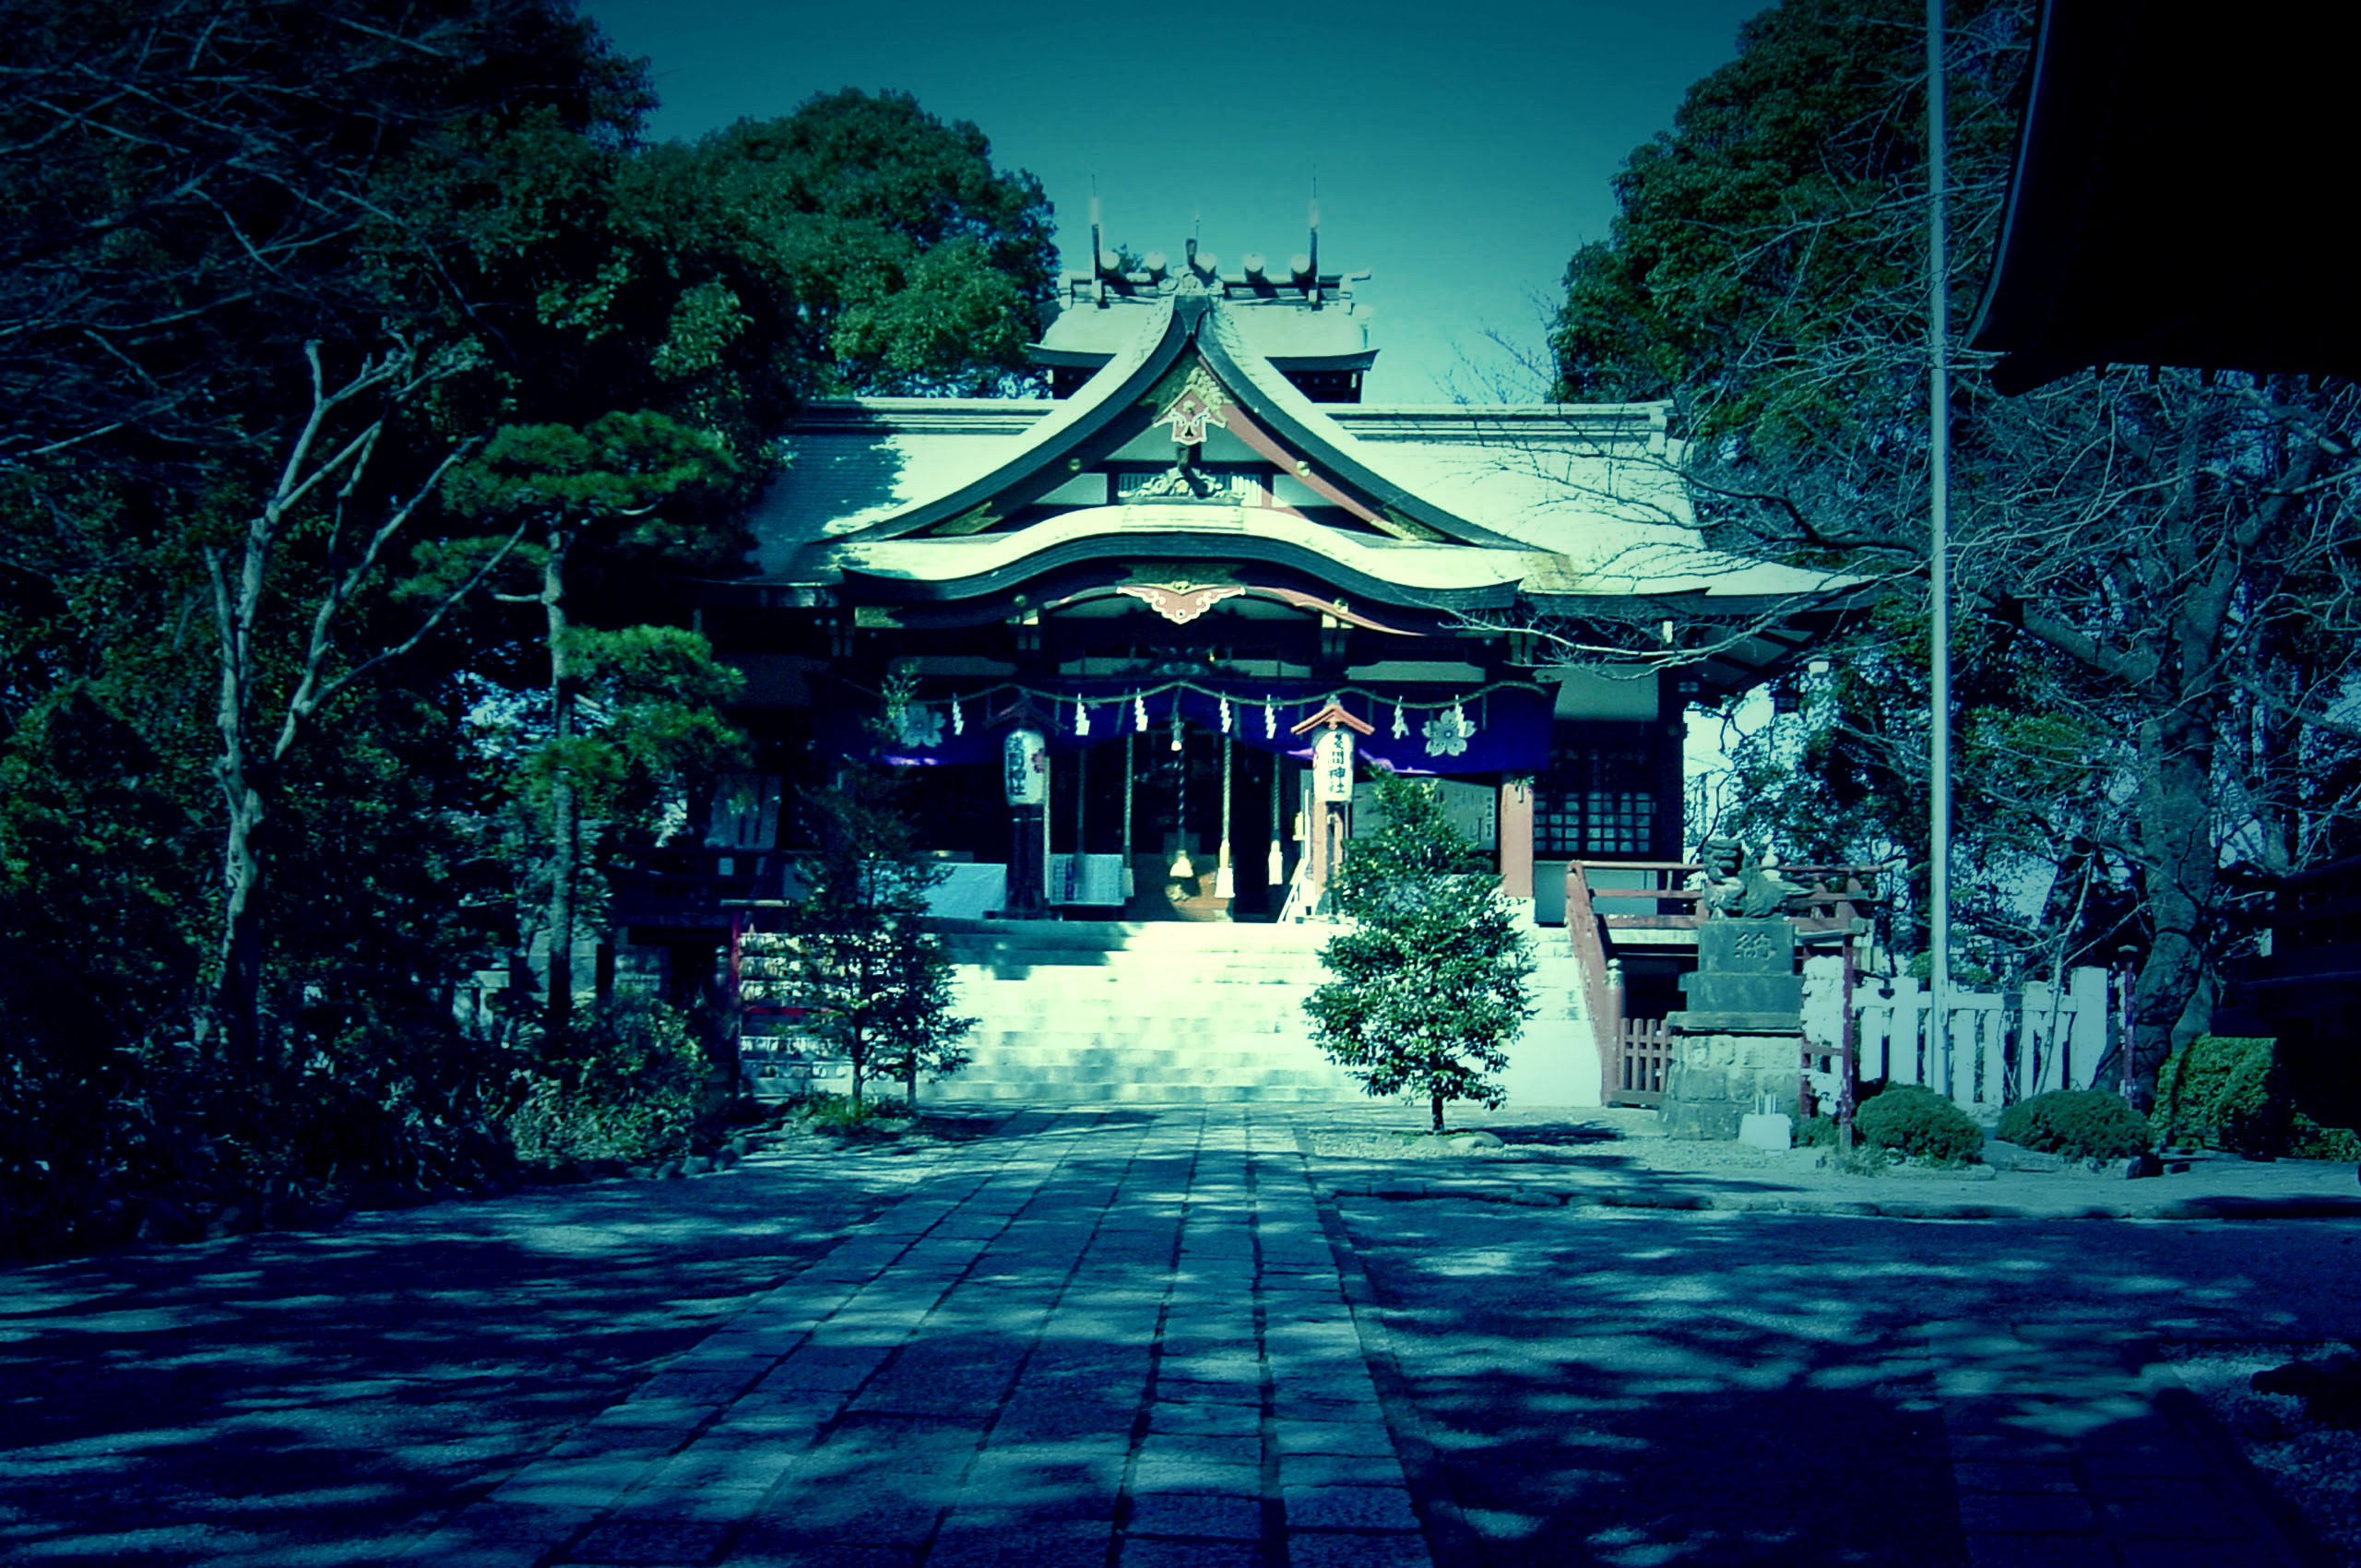 ノベルゲーム の 背景 に使える 神社 寺 の 無料 写真 シナリオライター空下元 個人サイト